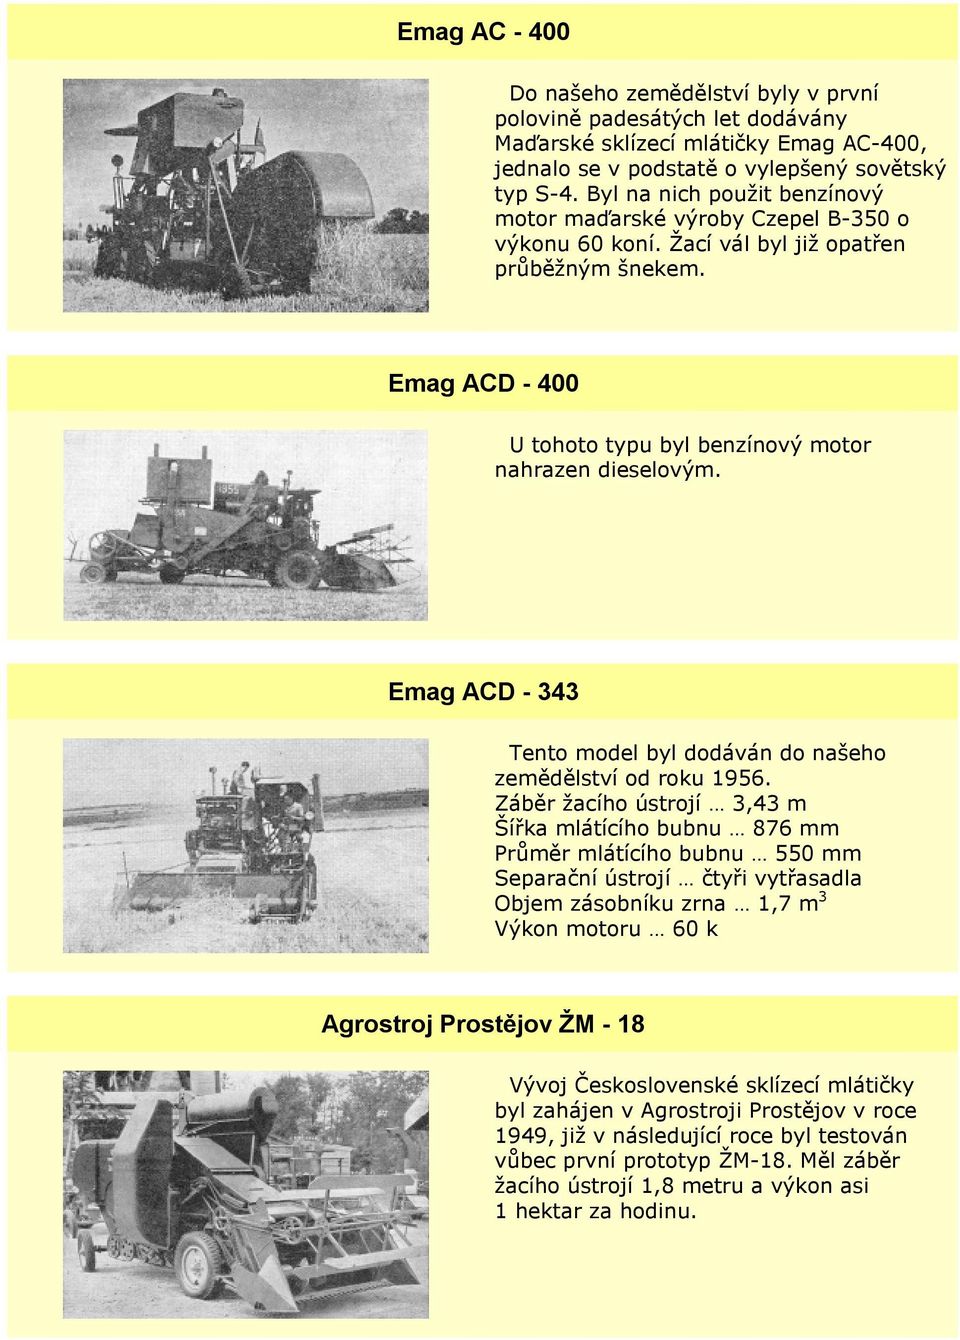 Emag ACD - 343 Tento model byl dodáván do našeho zemědělství od roku 1956.